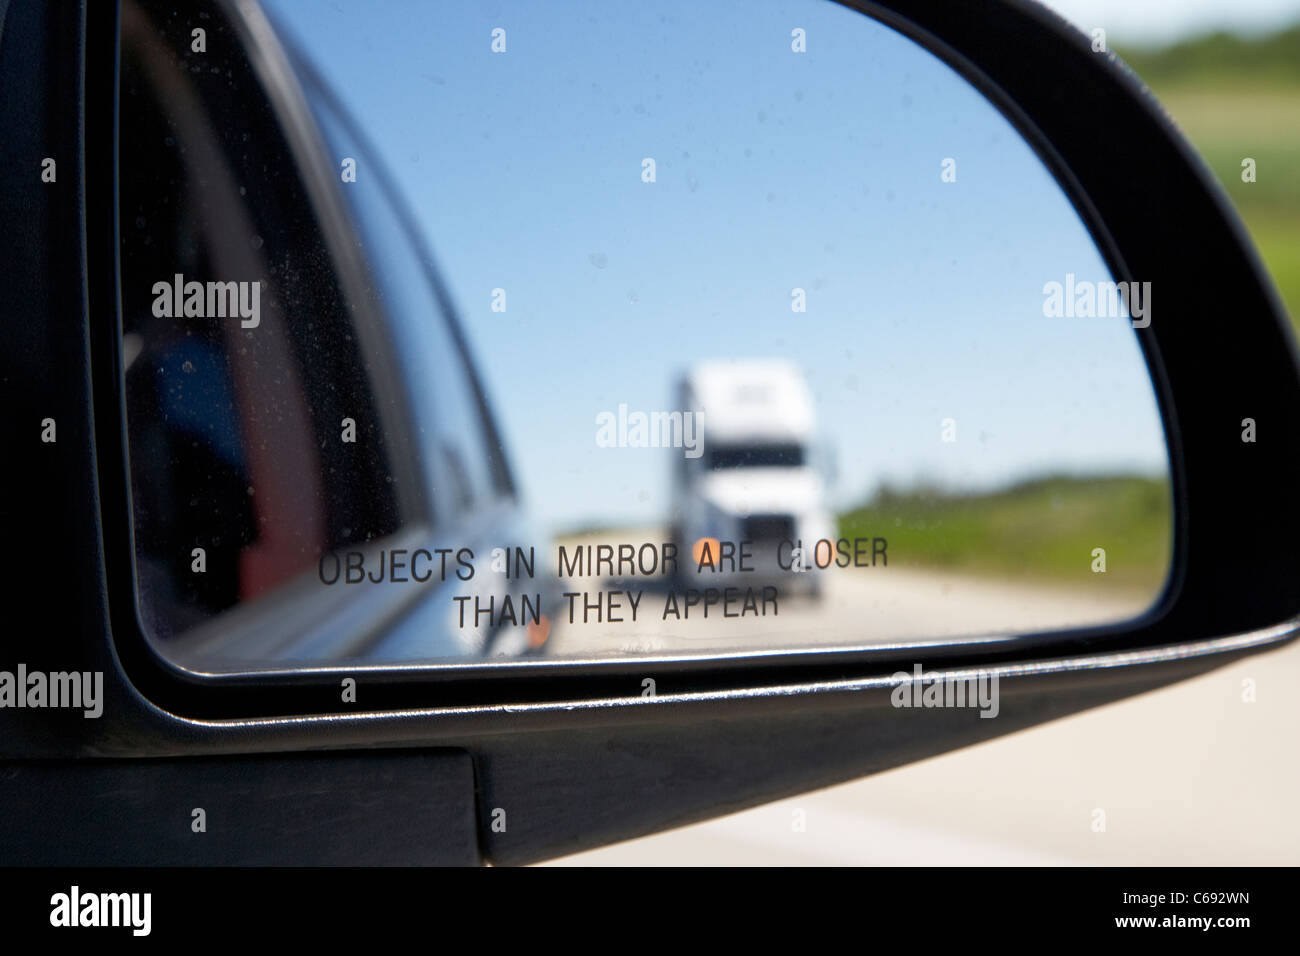 Objekte in Spiegel sind näher, als sie im Auto Außenspiegel